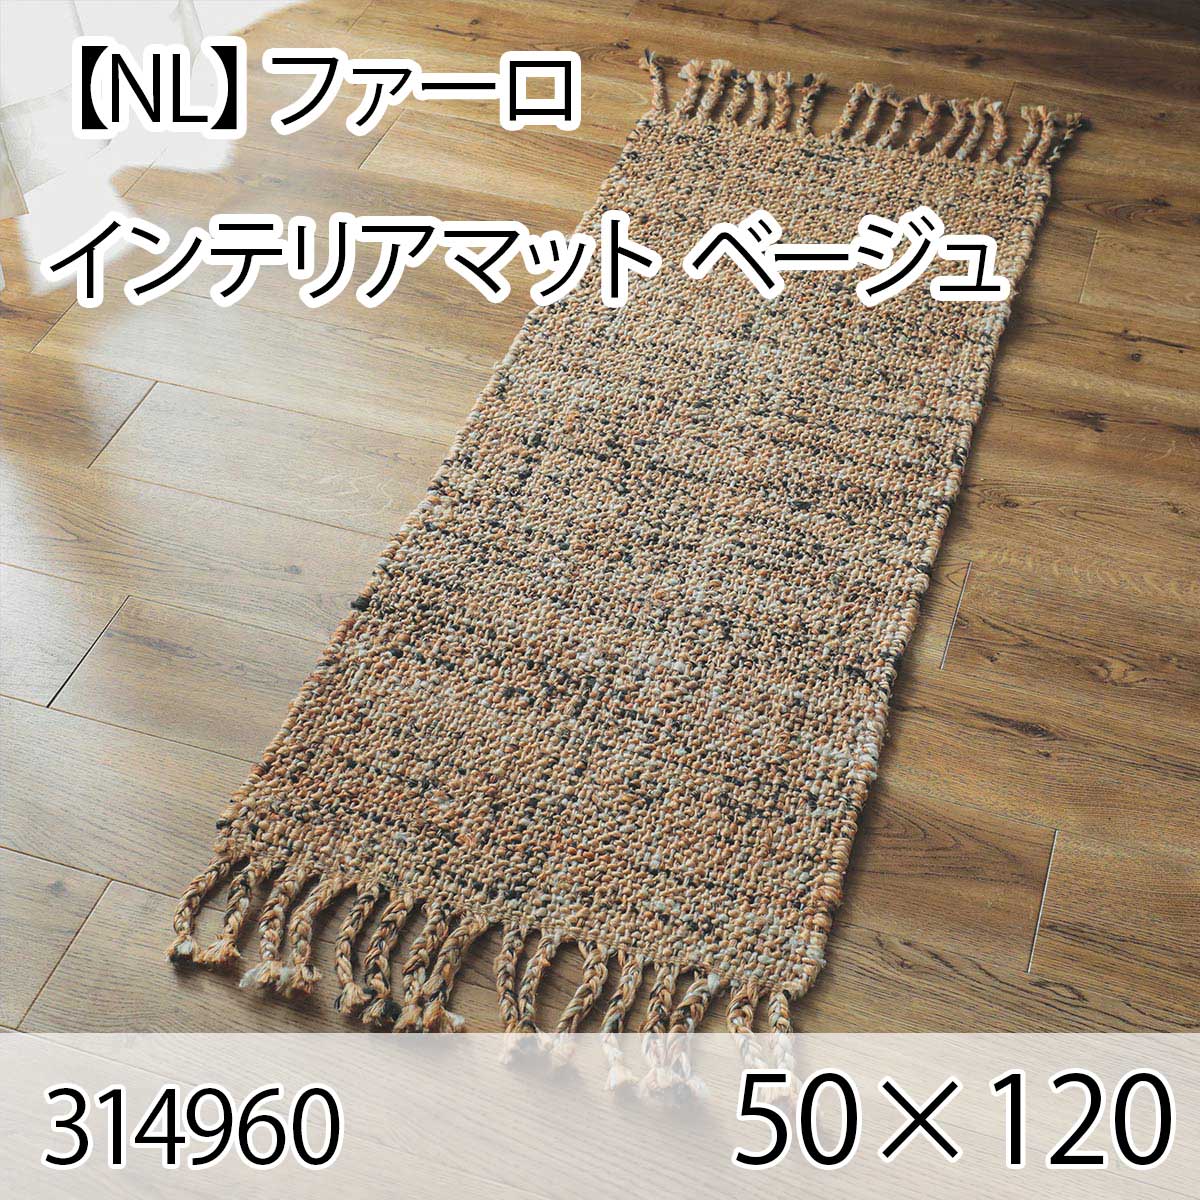 【NL】ファーロ インテリアマット 50cmx120cm ベージュ